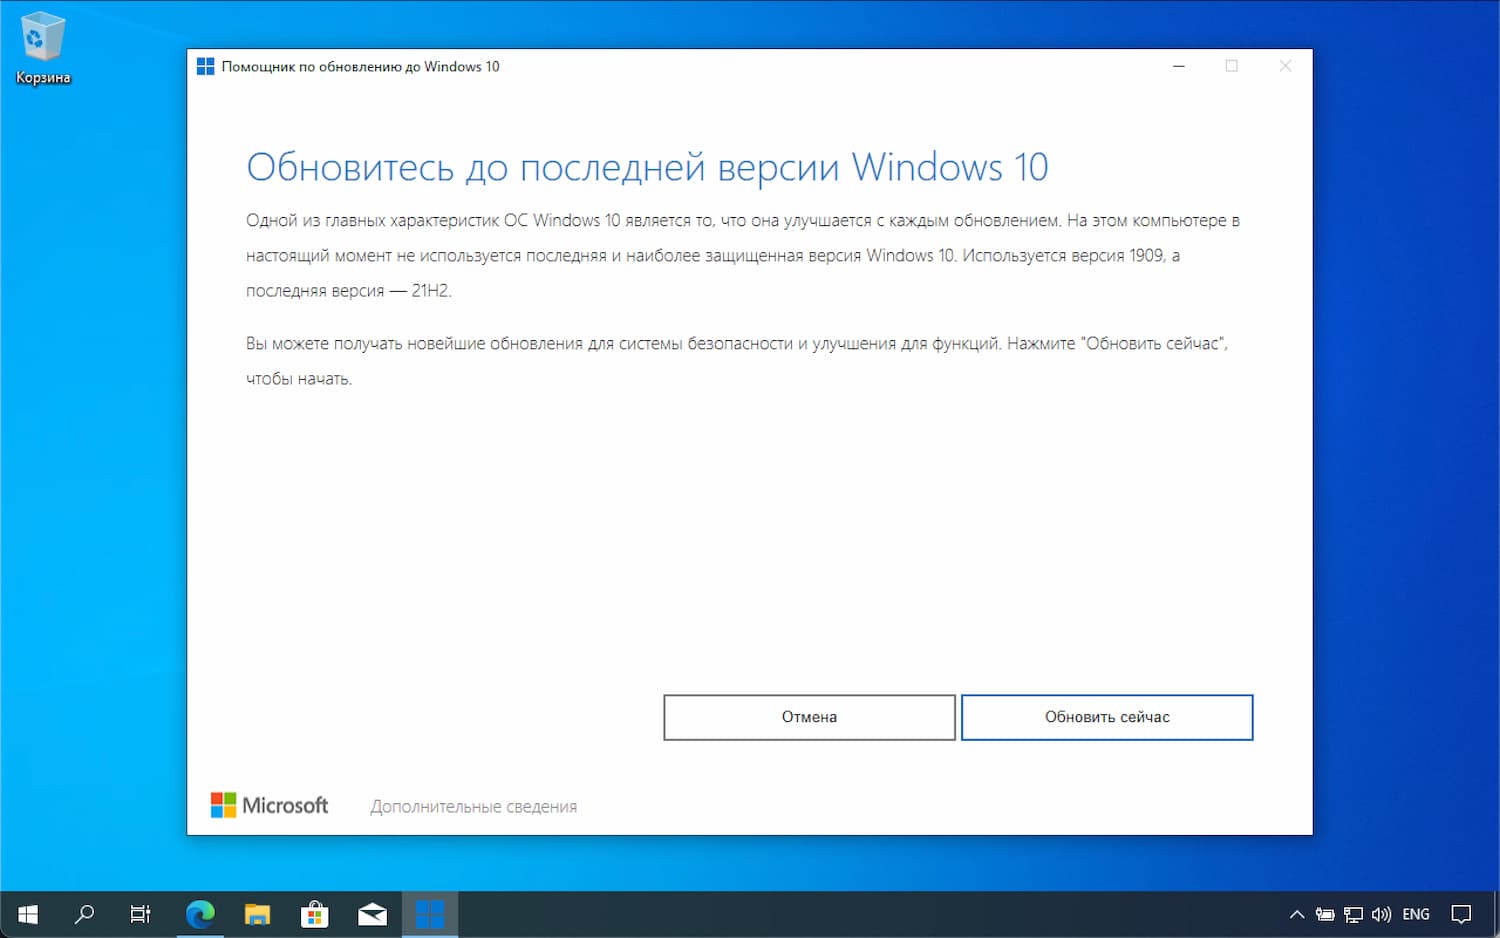 Как скачать windows 10 october 2020: установка с update assistant или media creation tool